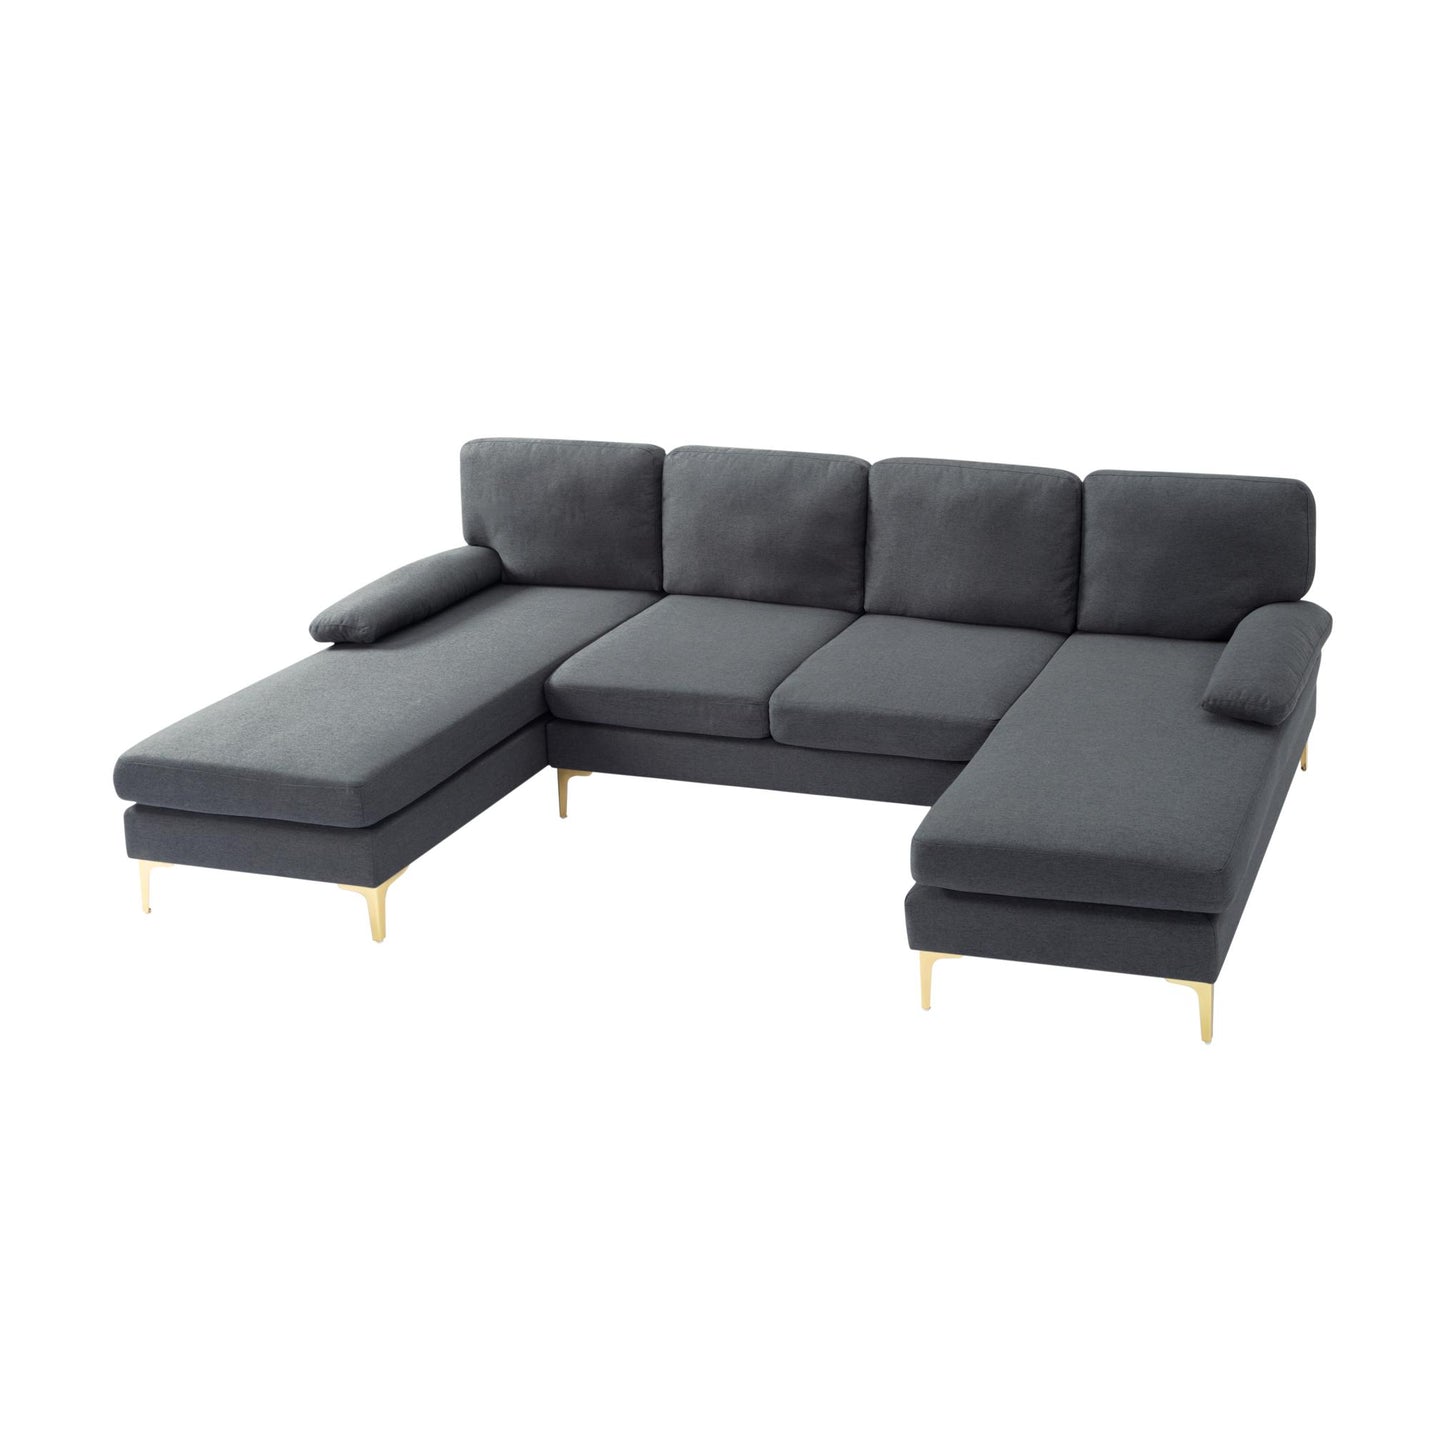 107.9” U-Shape Sectional Sofa